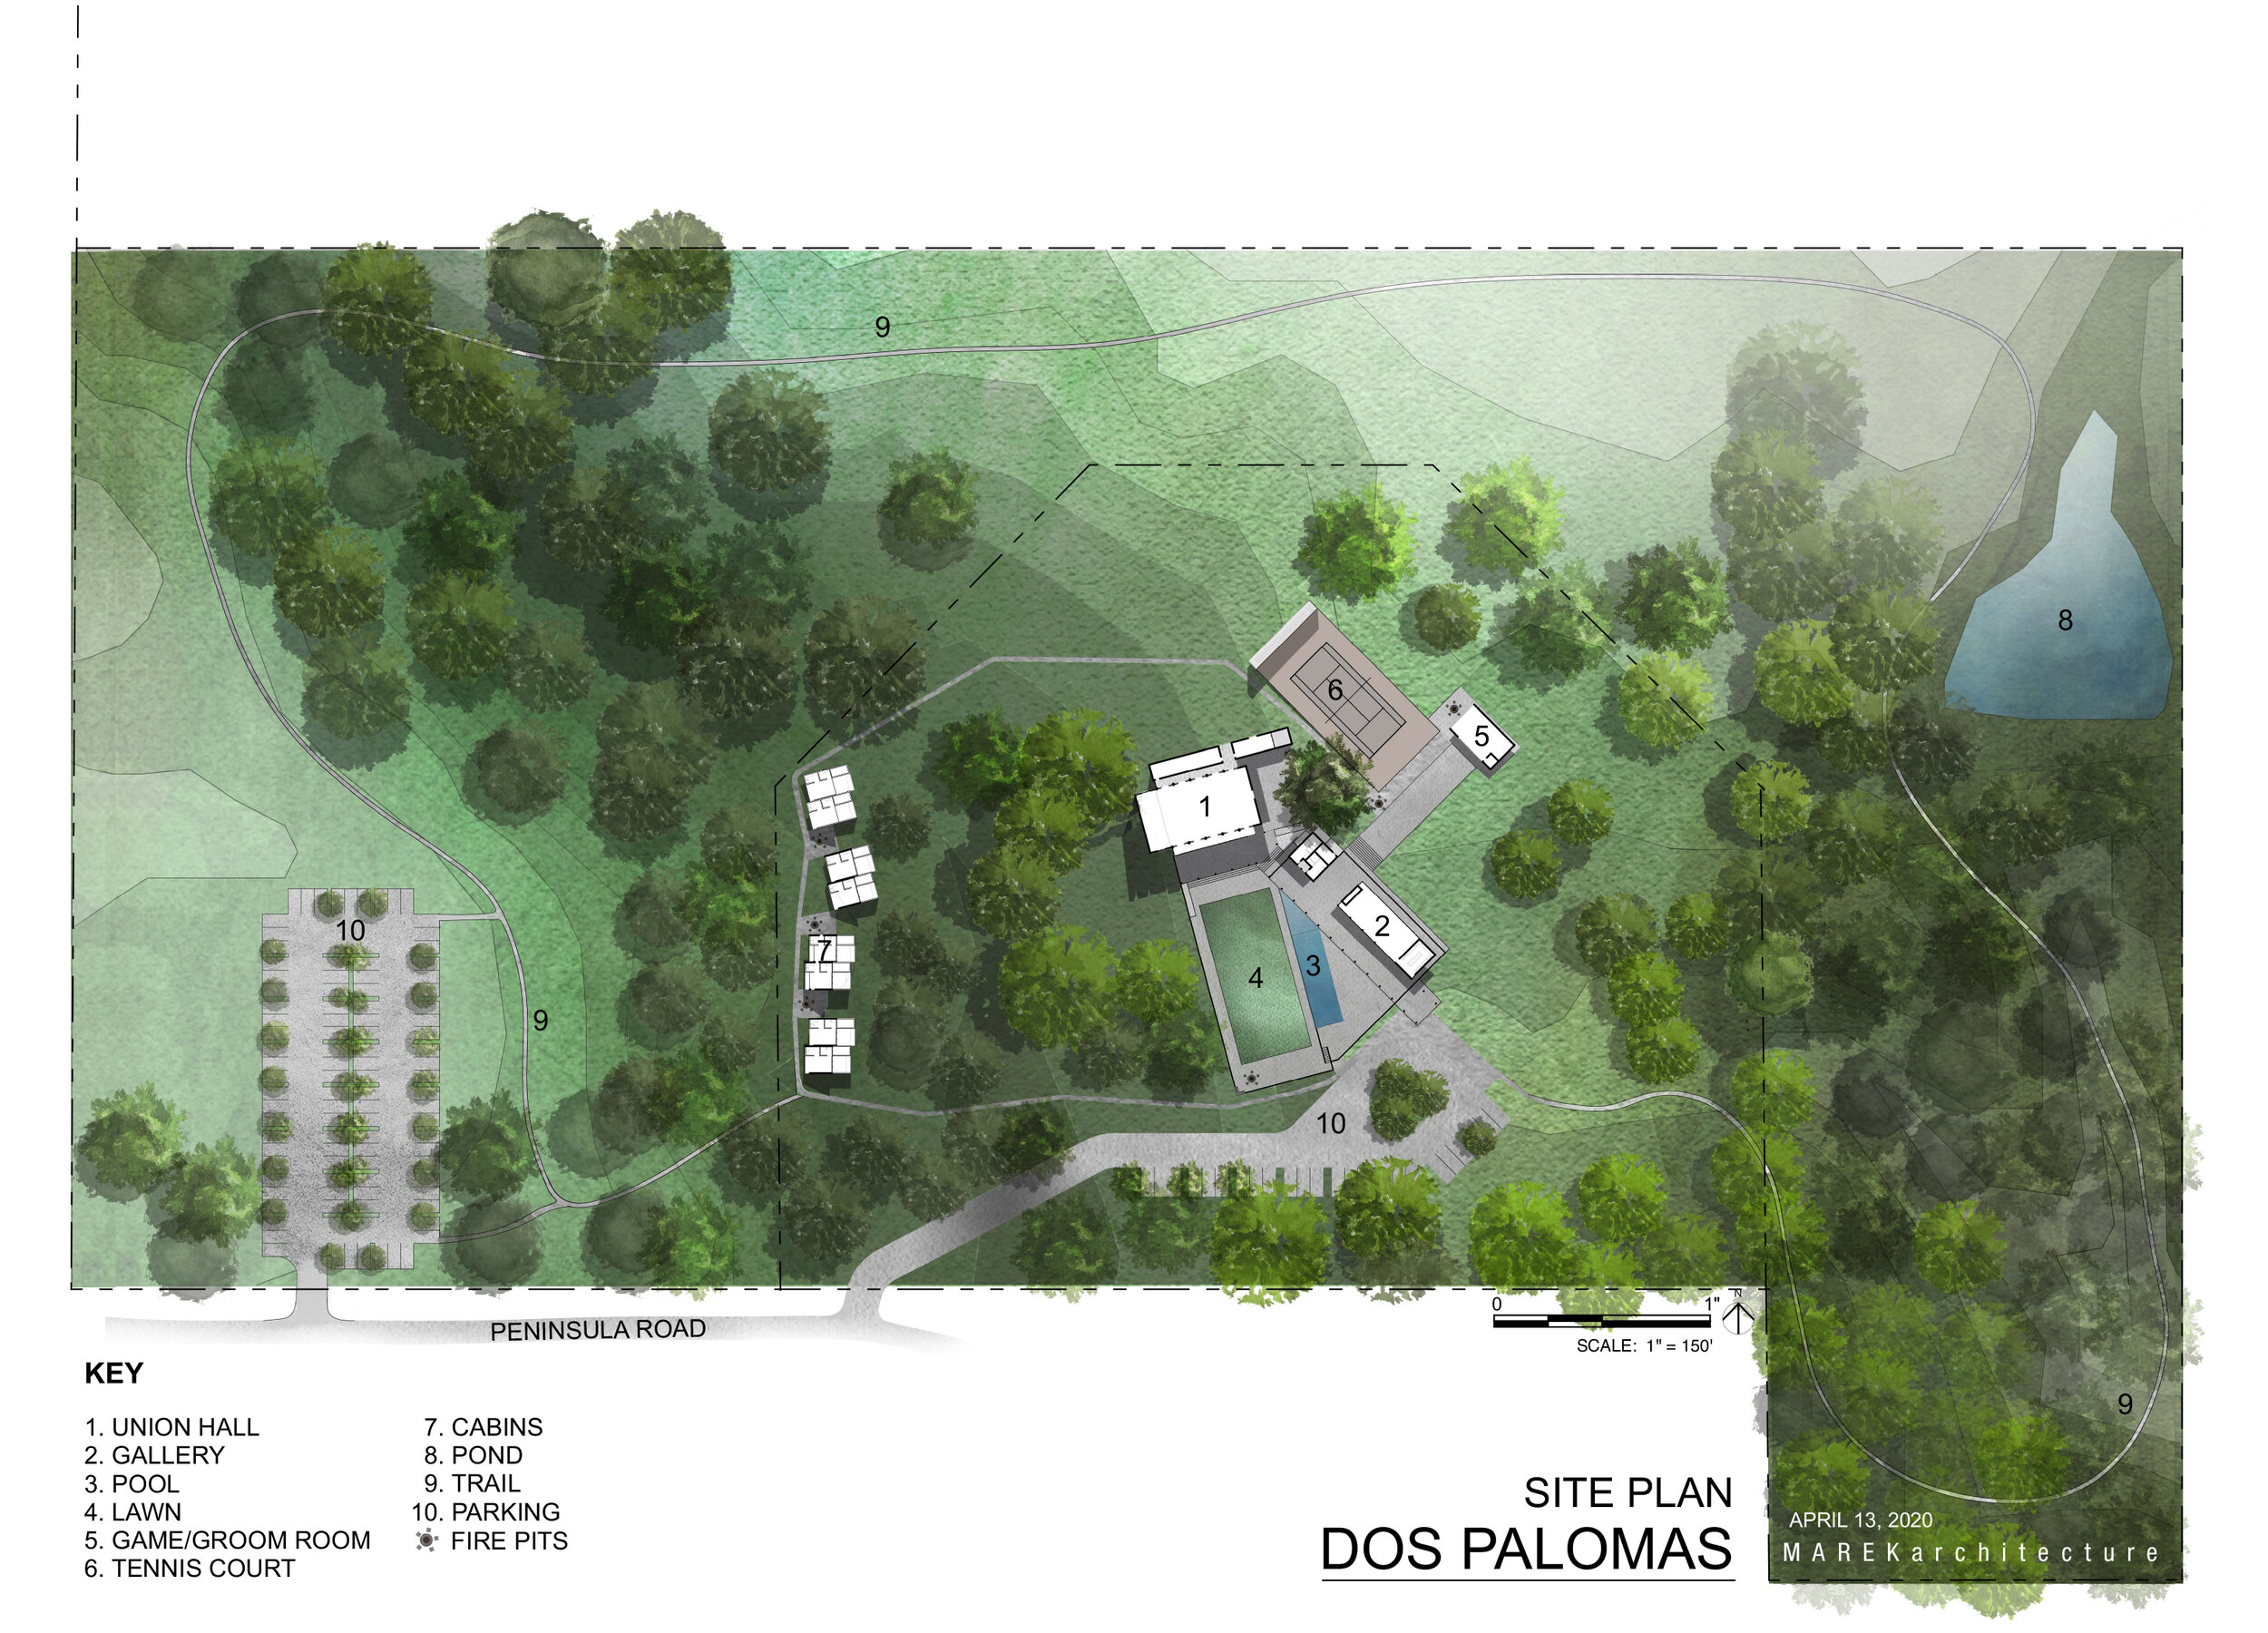 2001-Dospalomas-Graphic Site Plan.jpg